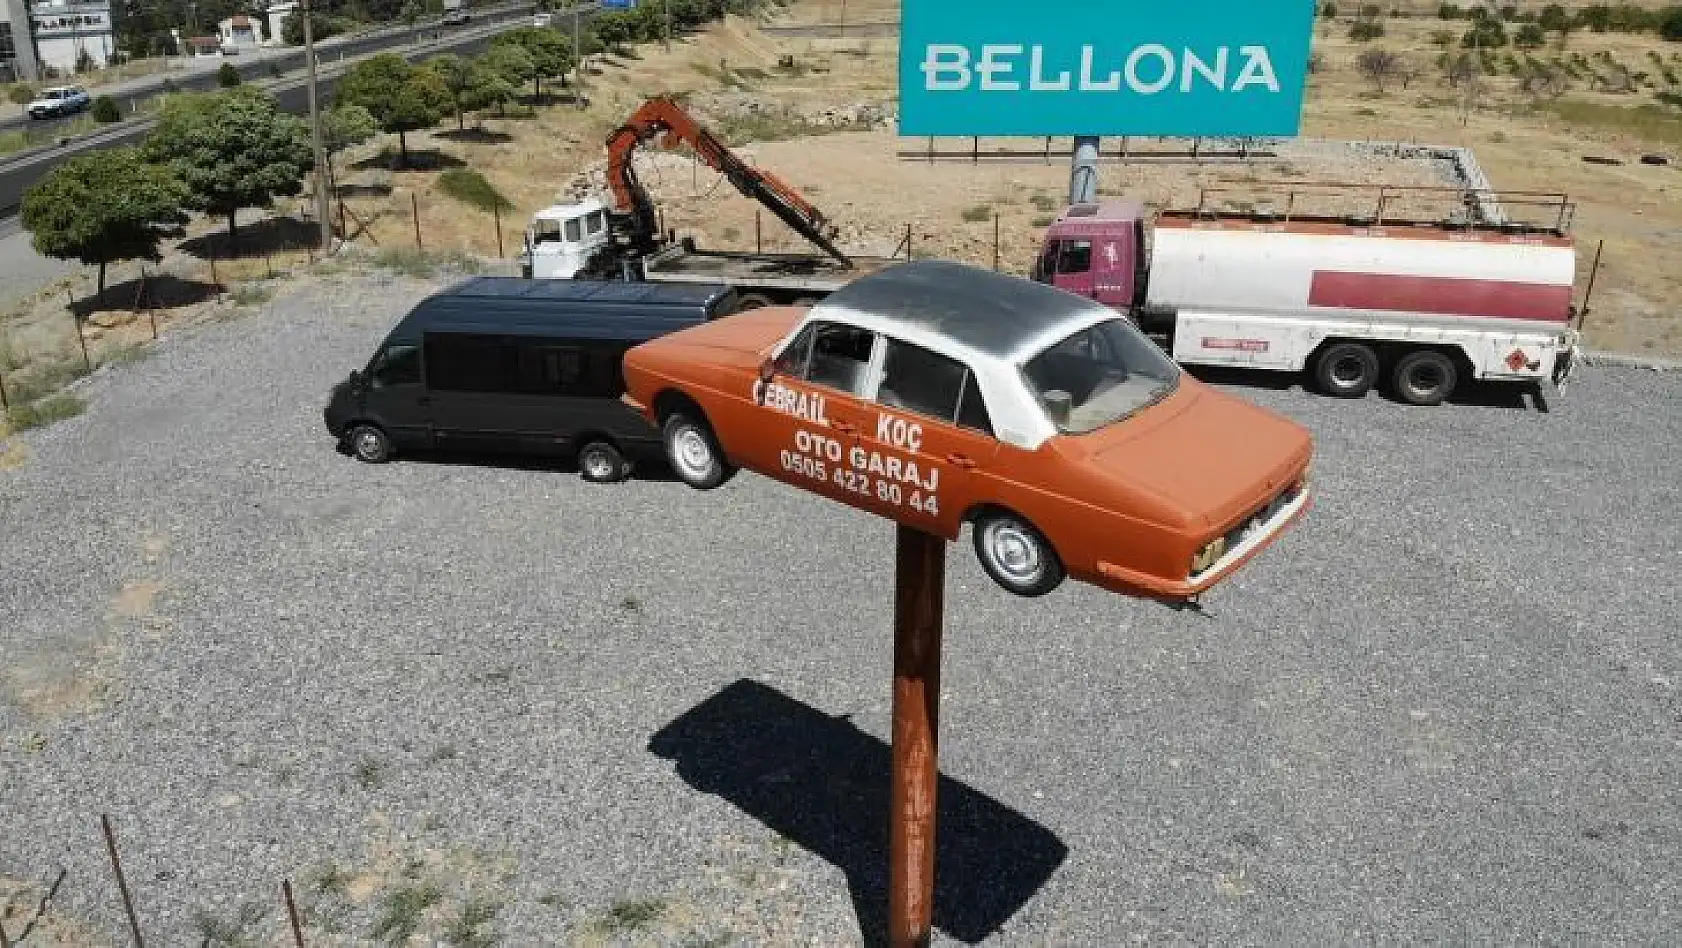 1983 model otomobil 5 metre yükseklikte direk üzerinde aksesuar oldu